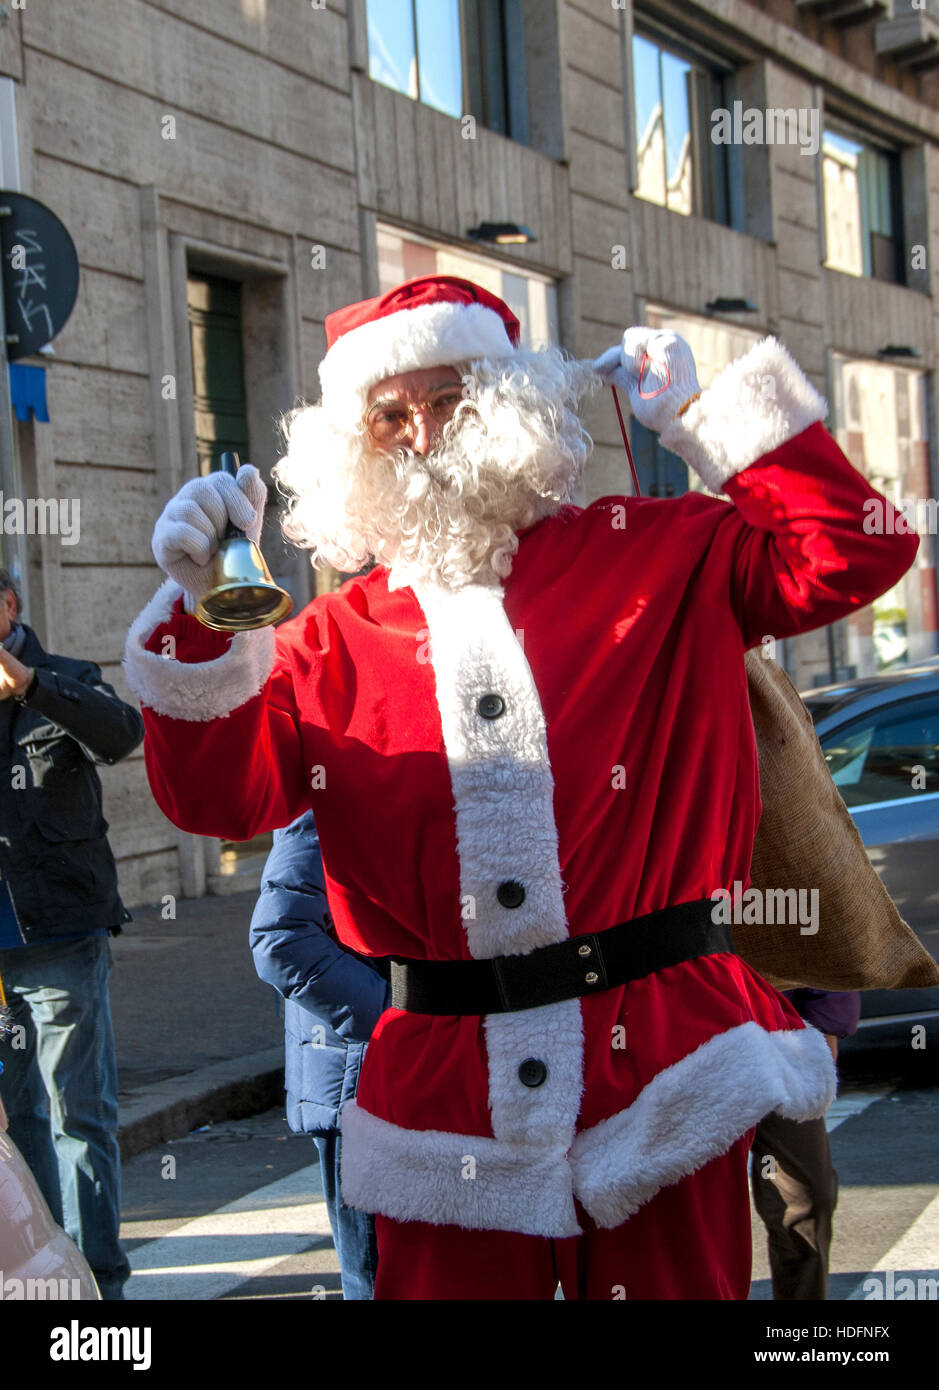 Weihnachtsmann kommt mit Hubschrauber Ansichtskarte